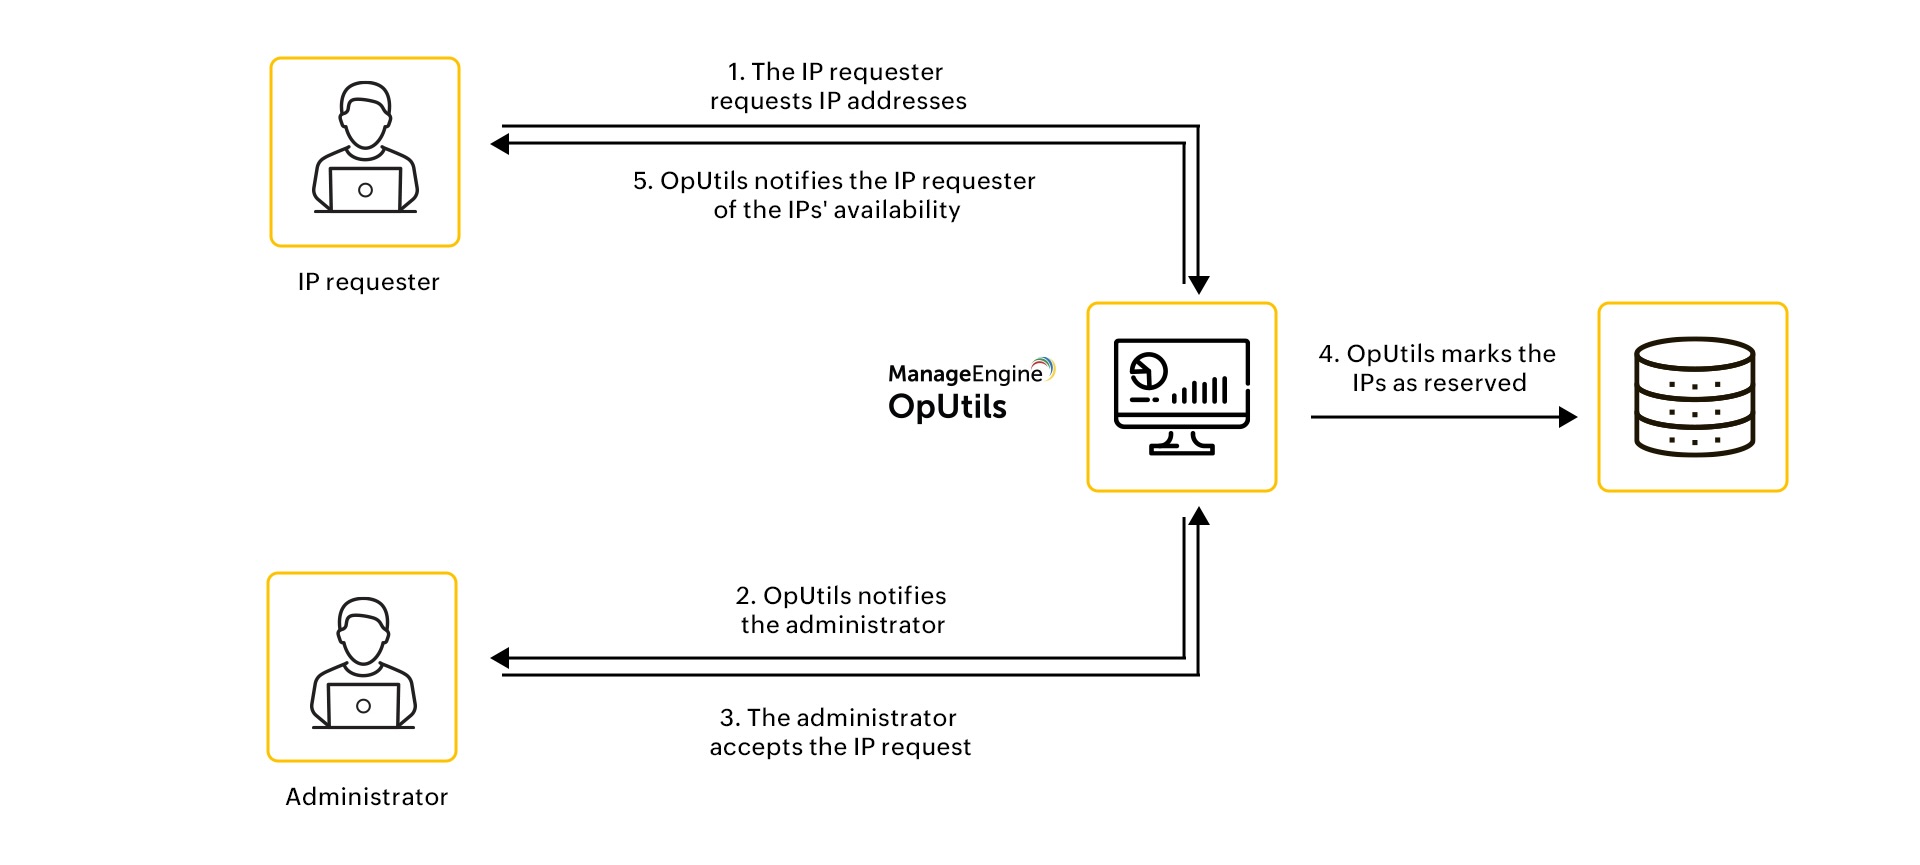 IP Request - ManageEngine OpUtils